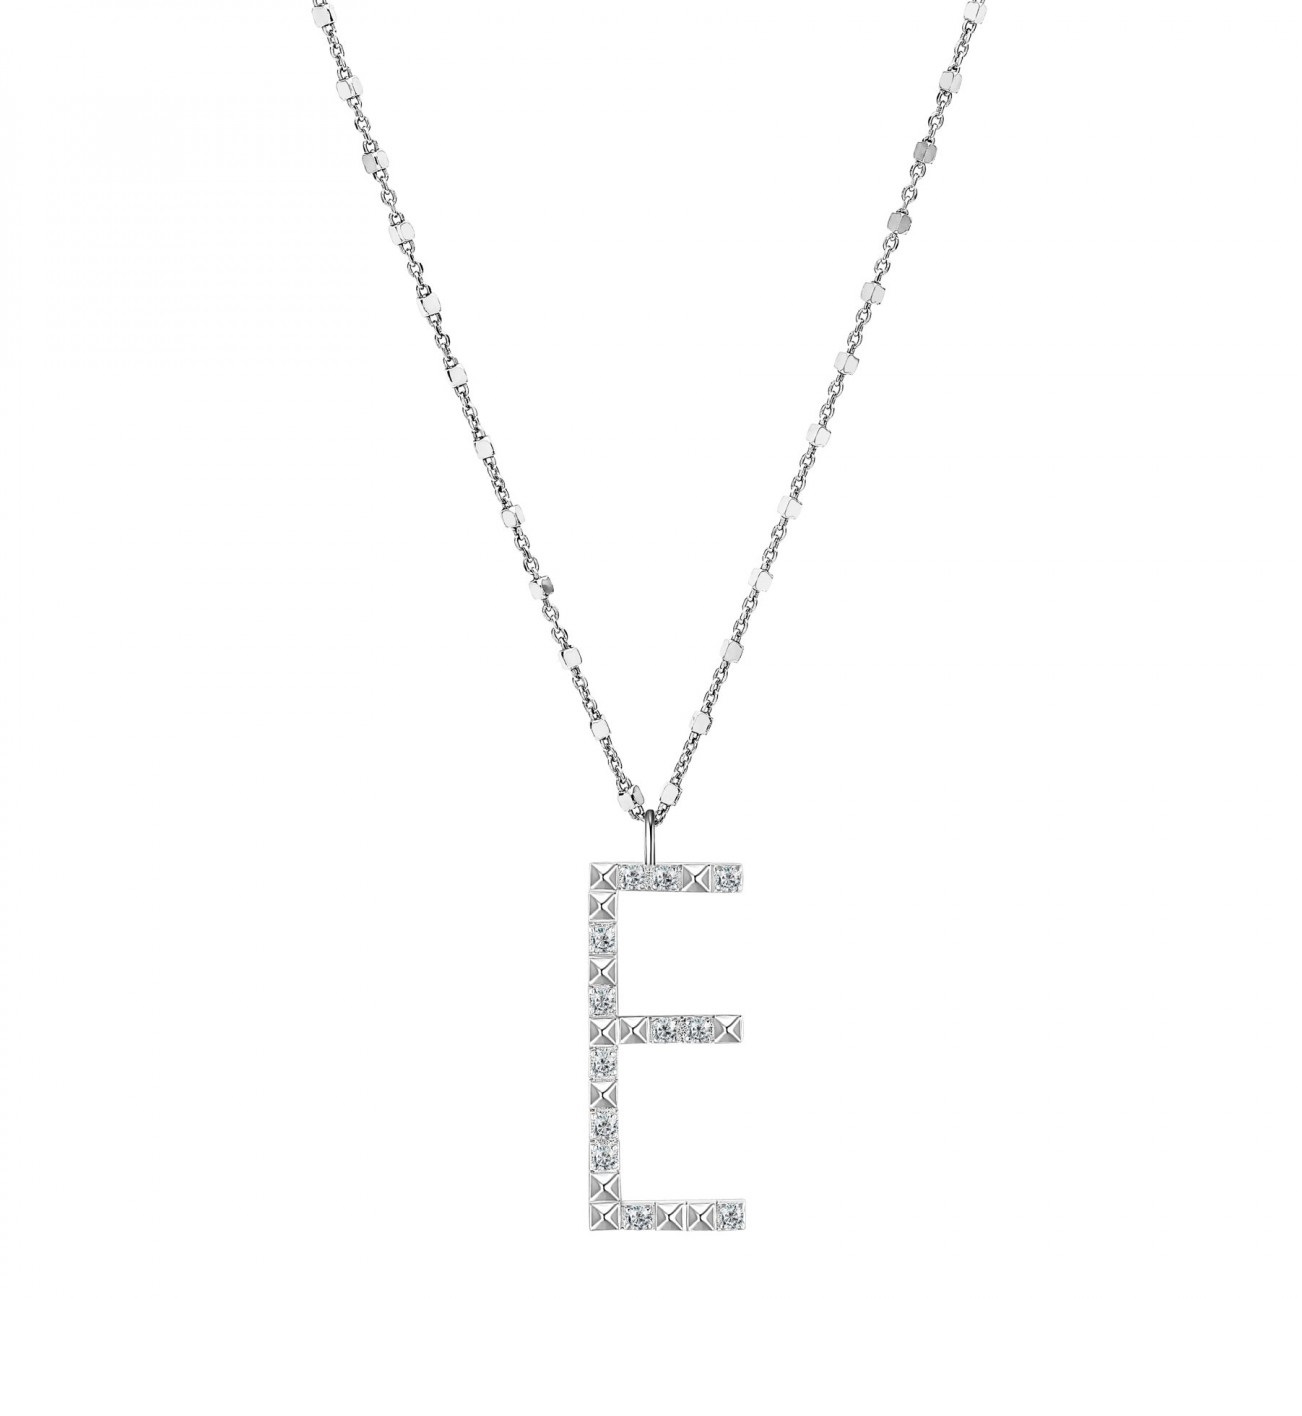 Rosato Stříbrný náhrdelník s přívěskem E Cubica RZCU05 (řetízek, přívěsek)